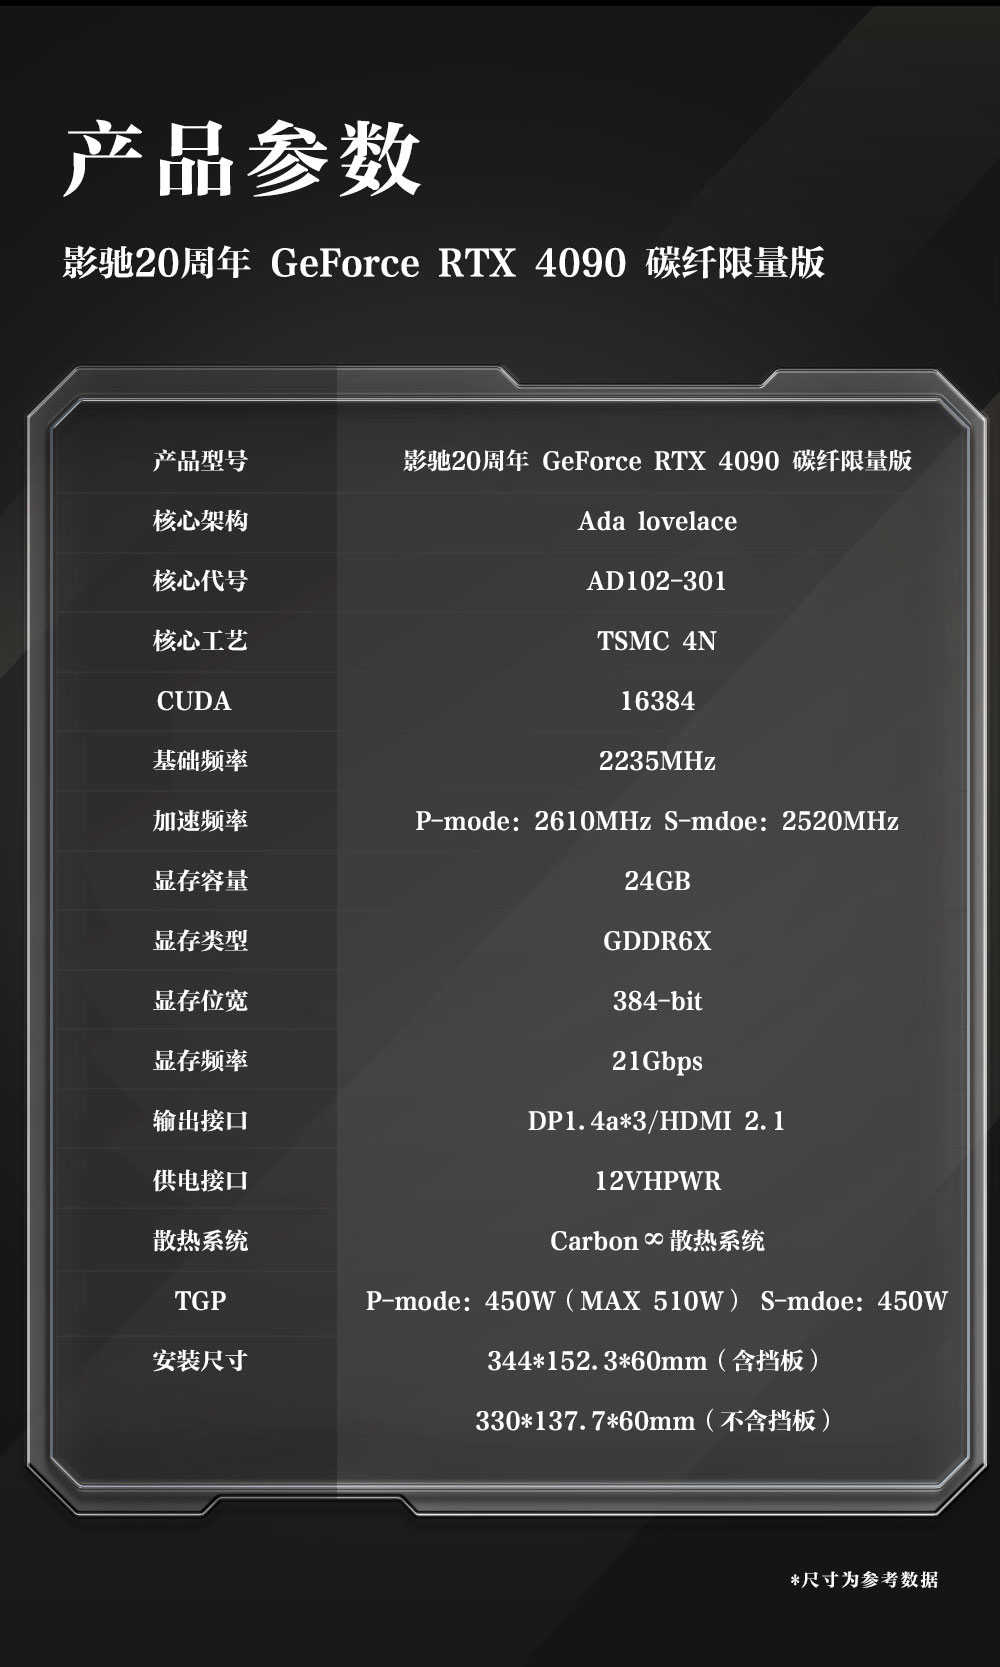 势在必燃！影驰20周年GeForce RTX 4090显卡正式发售！-电商科技网